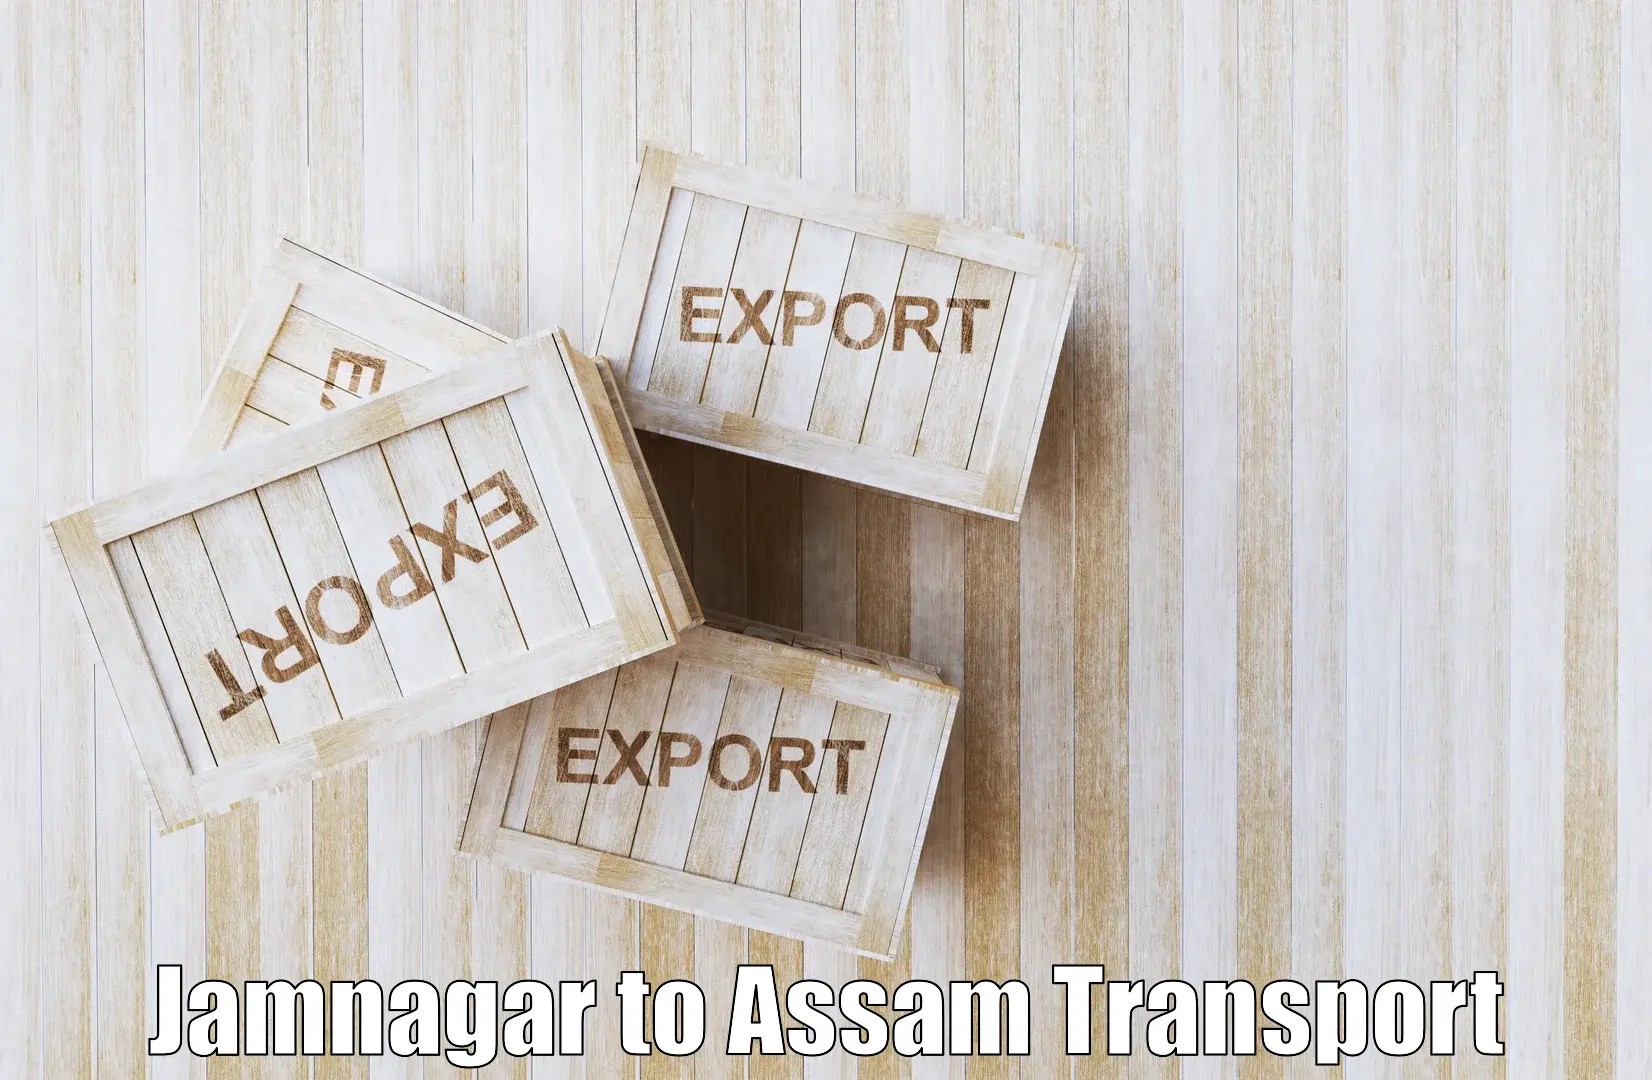 Vehicle parcel service Jamnagar to Mazbat